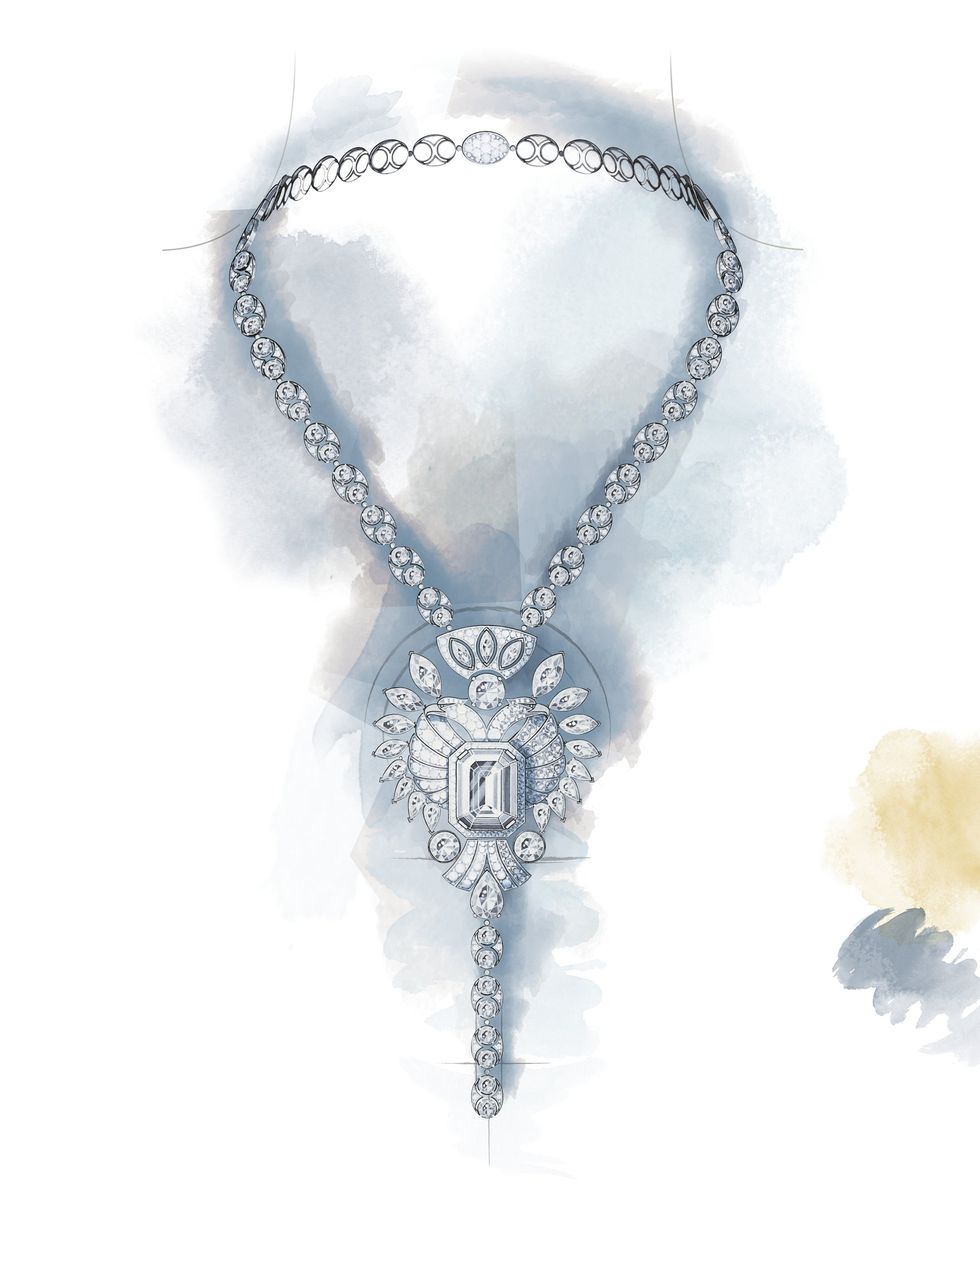 Chanel 2019 高級珠寶Le Paris Russe de Chanel系列 Aigle Cambon項鍊